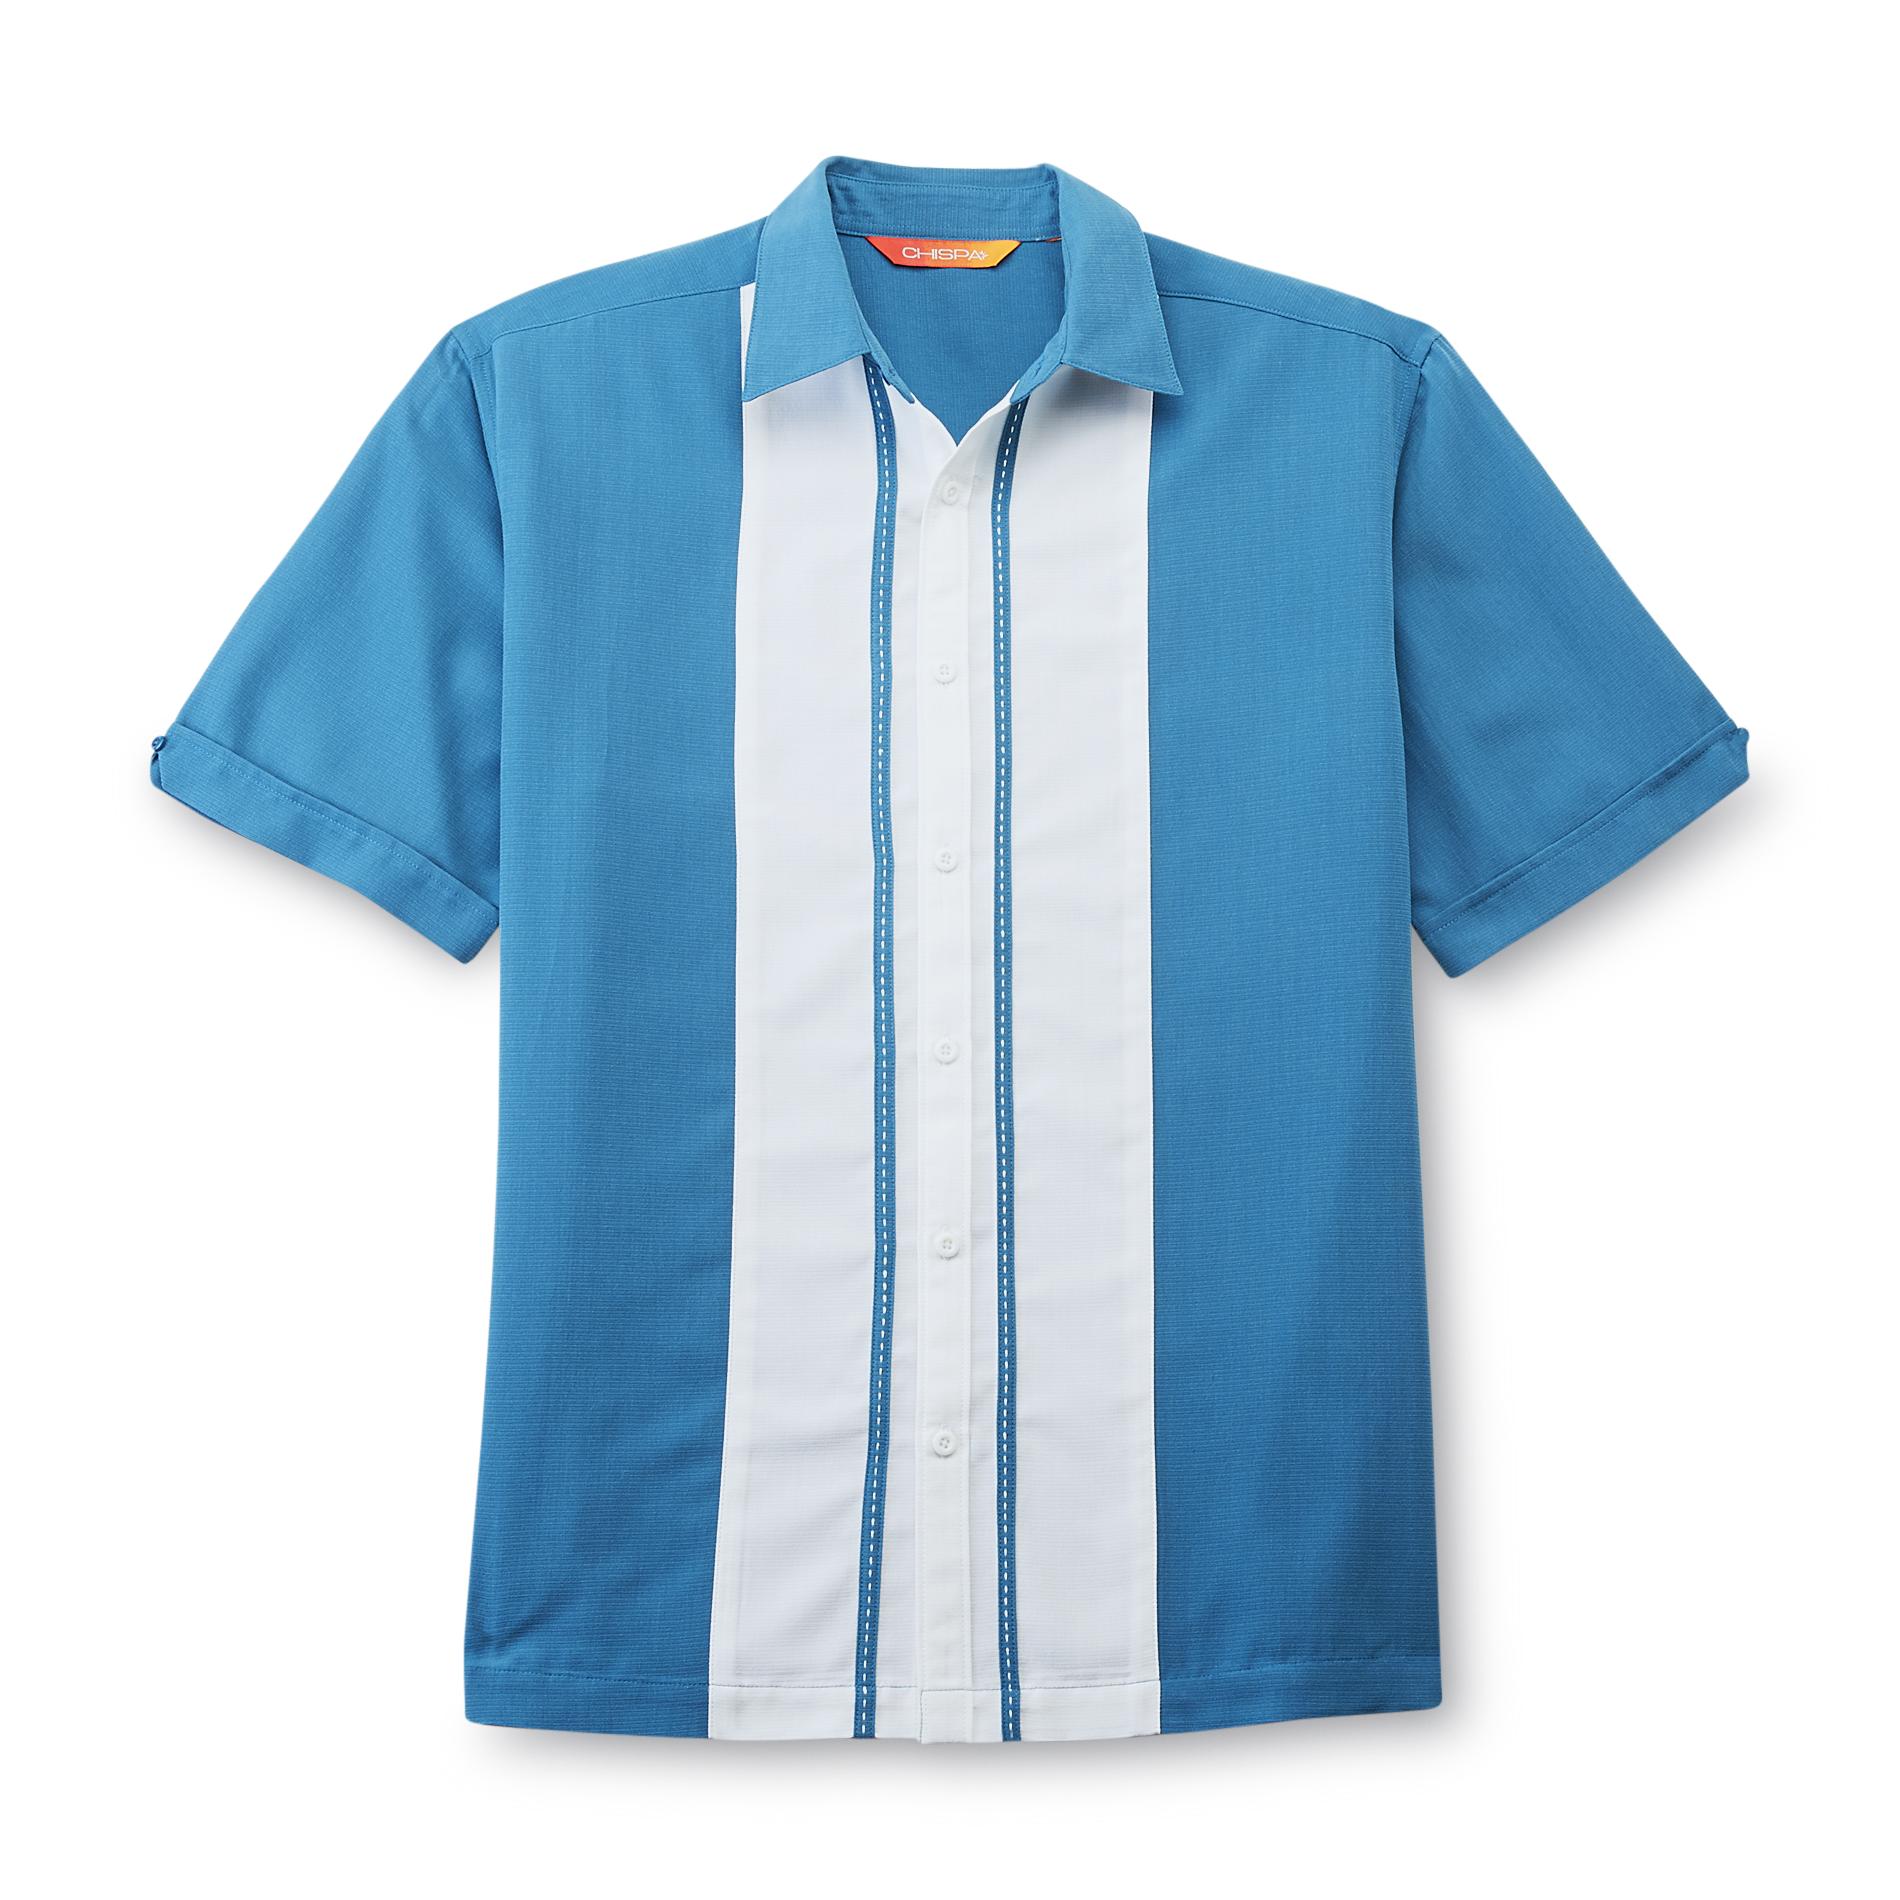 Chispa Men's Cabana Shirt - Colorblock